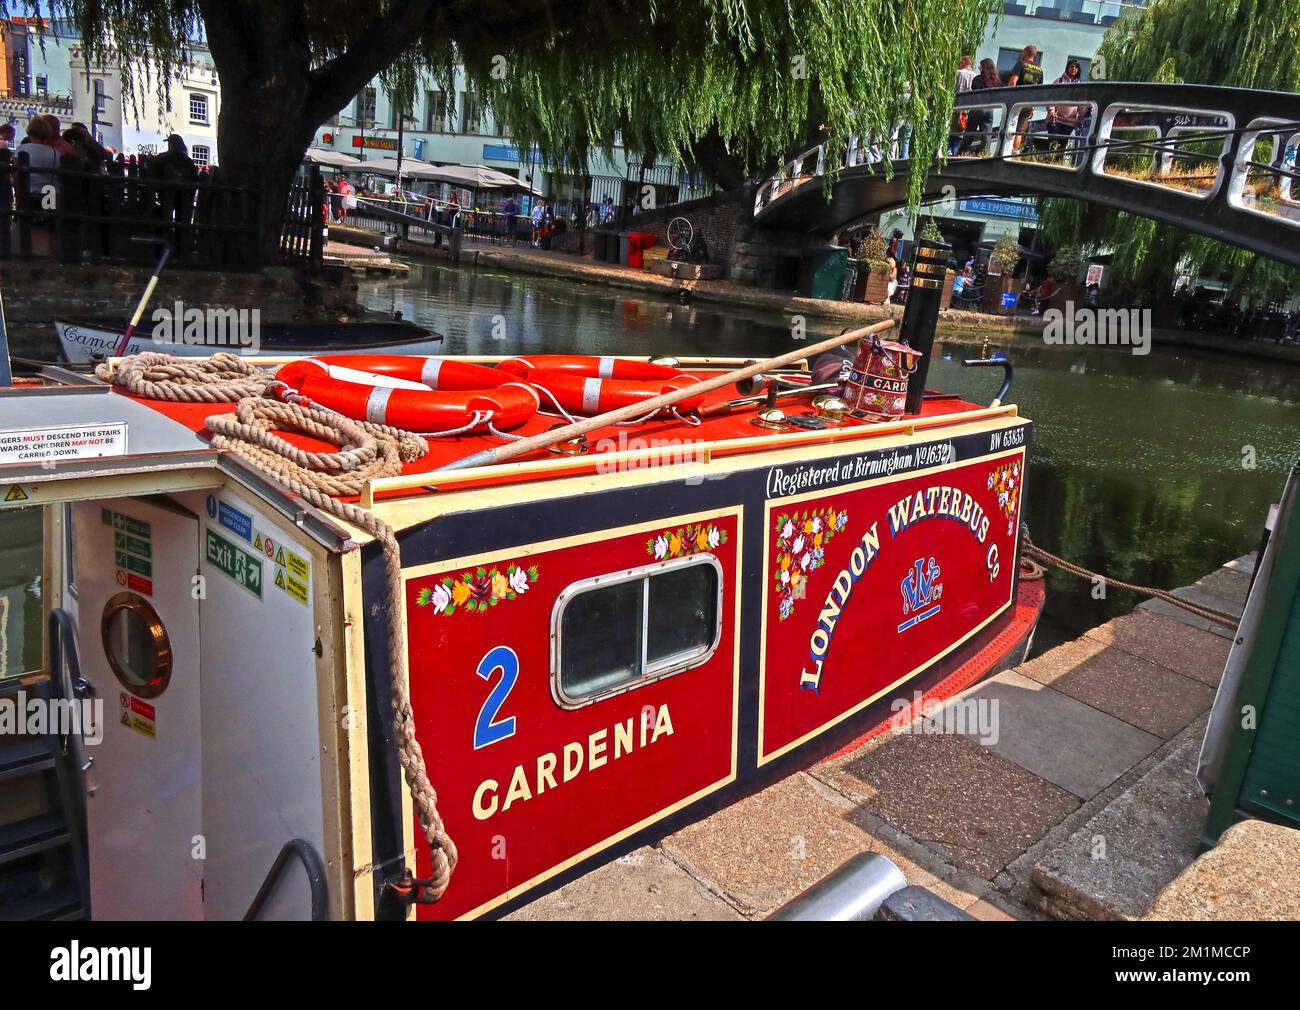 2 Gardenia aux écluses de Camden, canal, bateaux et marché, Lock place, Camden, Londres, Angleterre, Royaume-Uni, NW1 8AF Banque D'Images